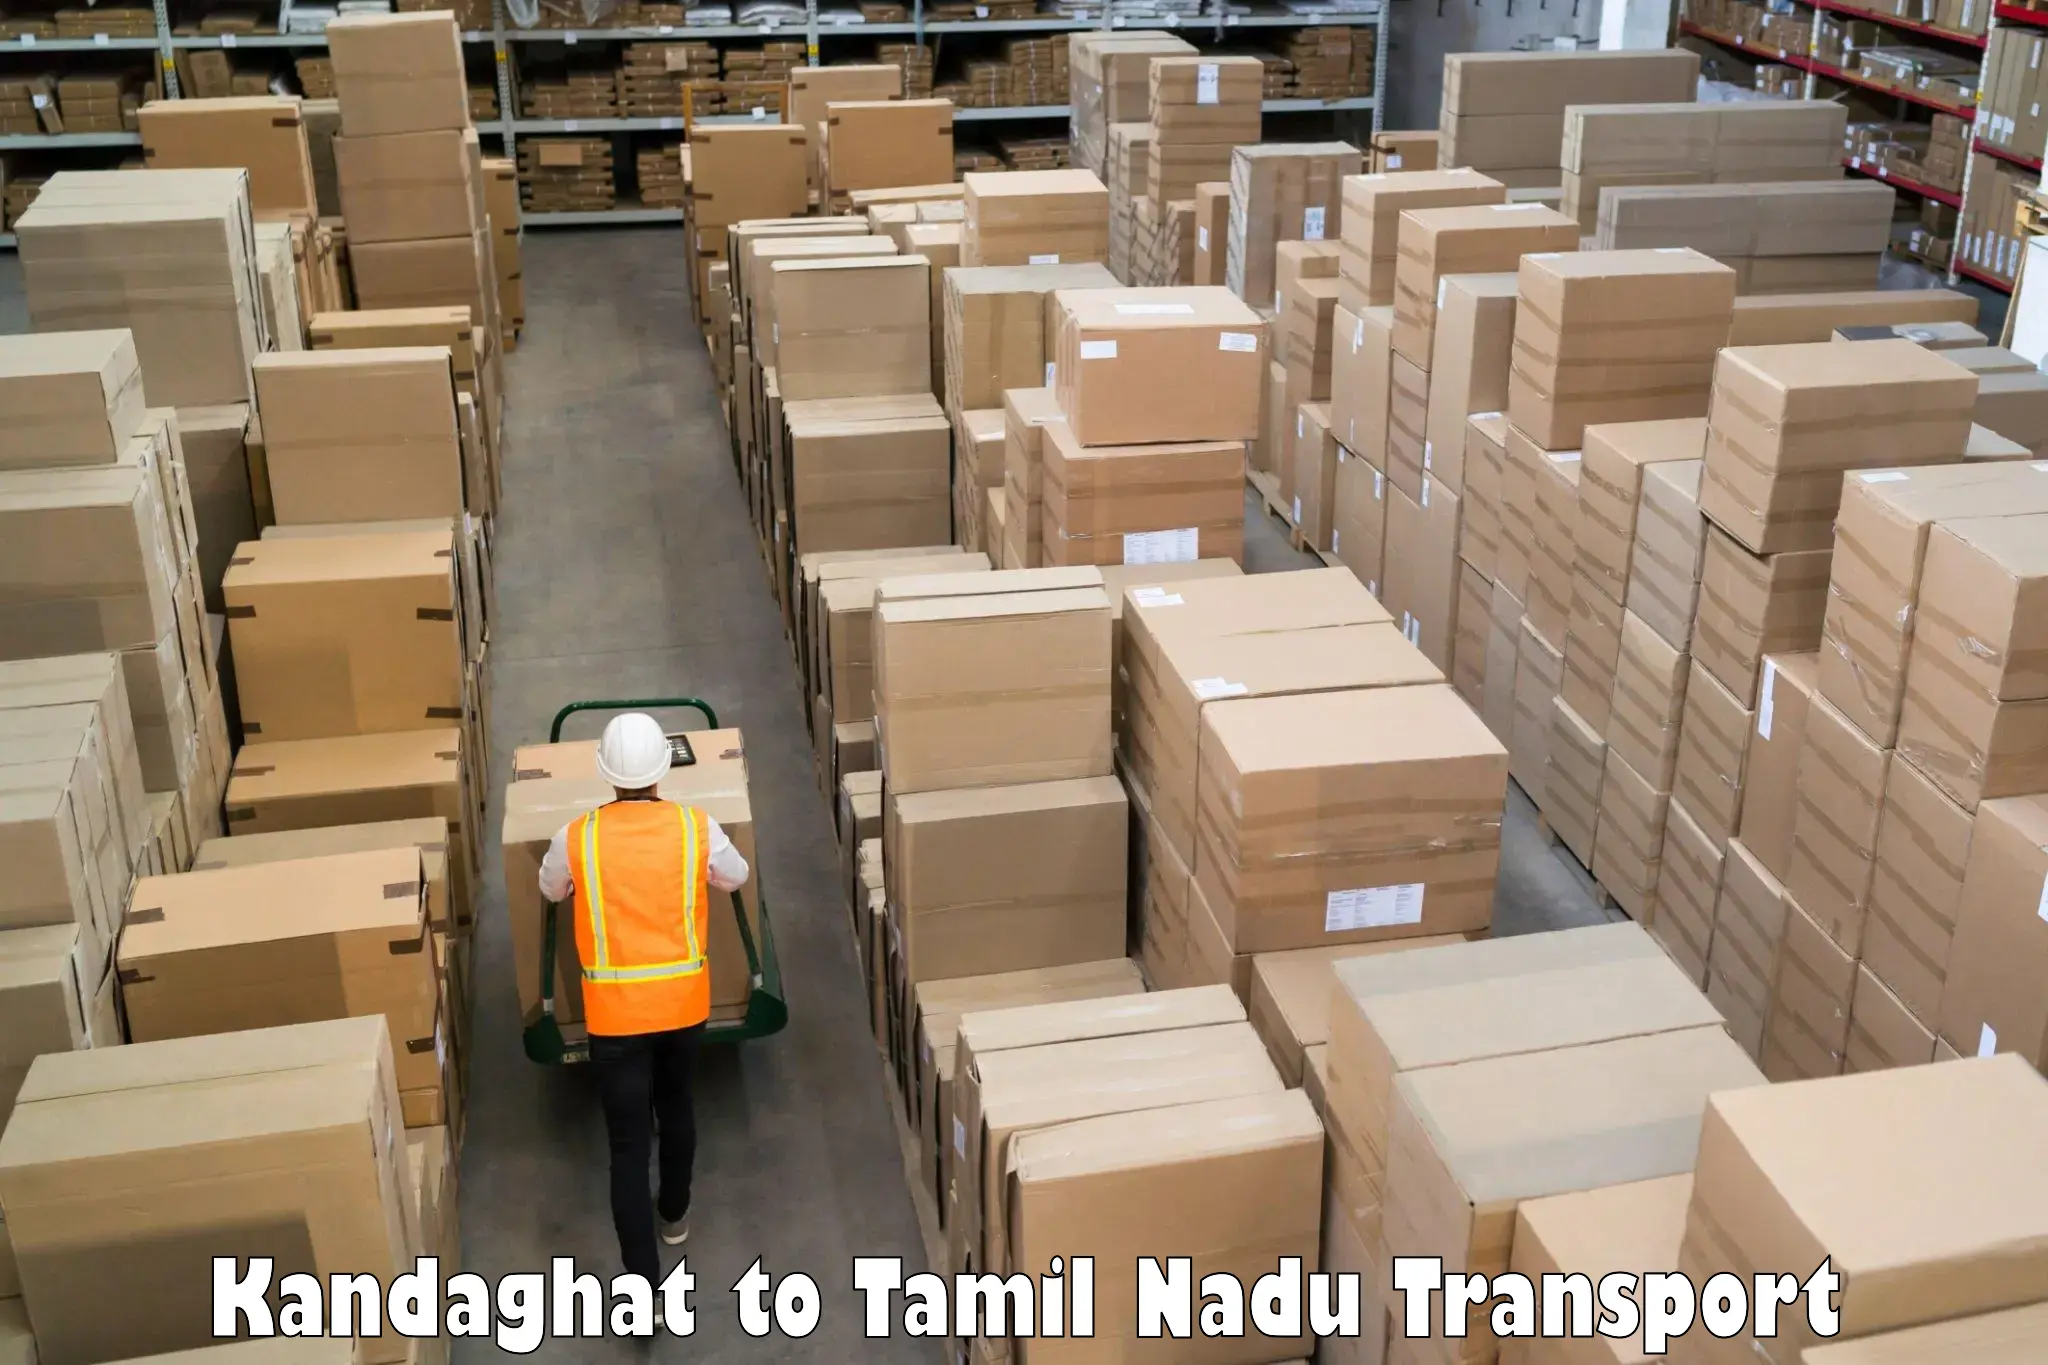 Cargo train transport services Kandaghat to Udagamandalam